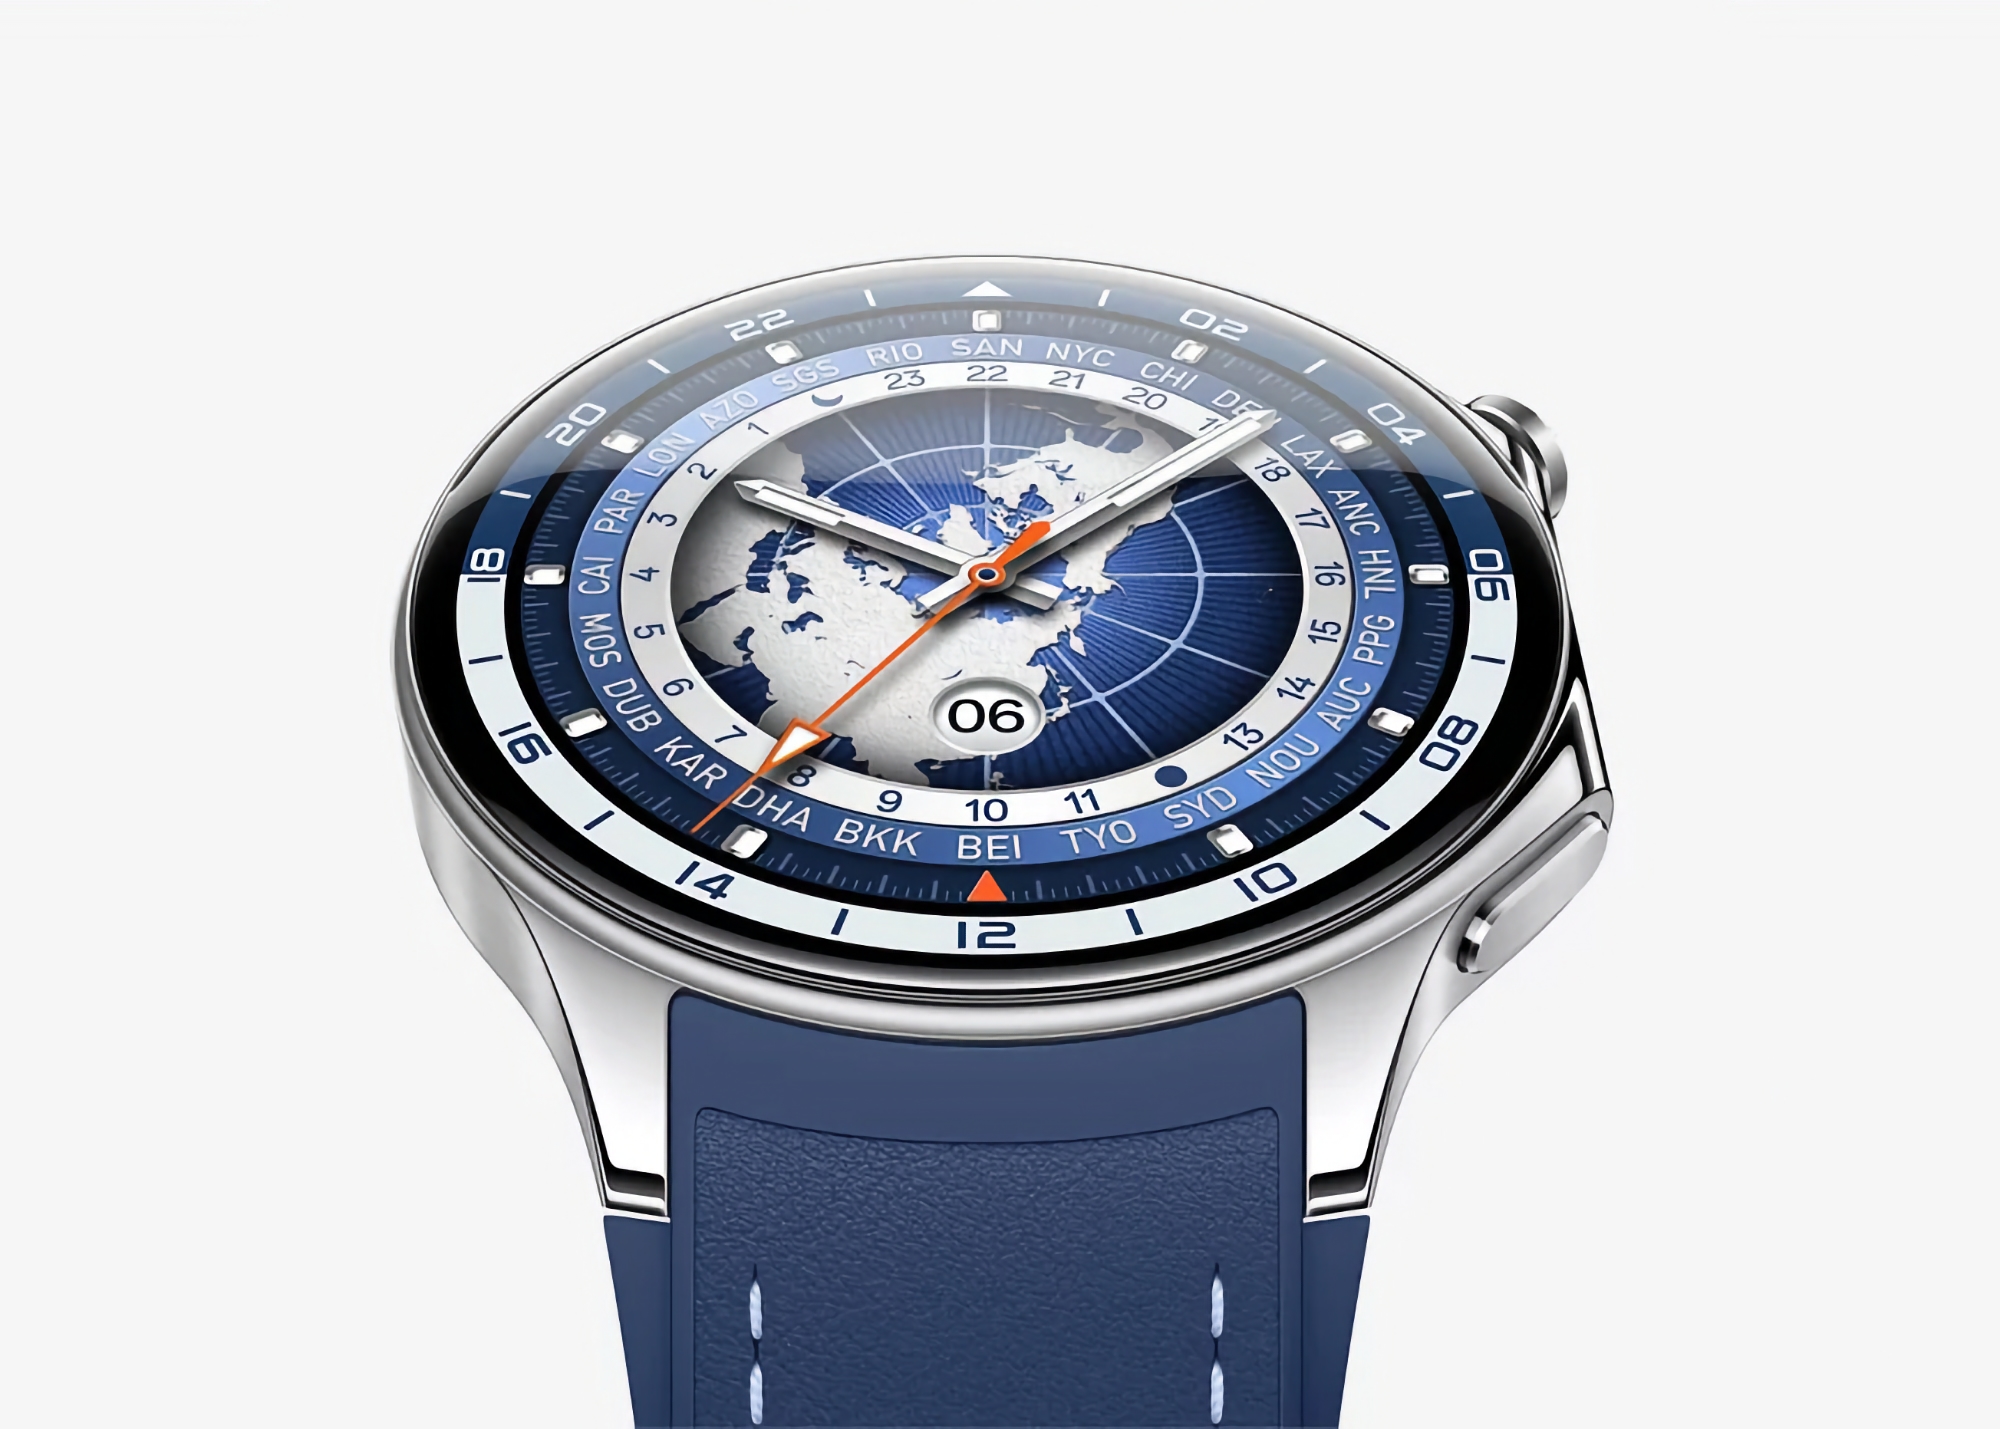 OPPO Watch X met eSIM-ondersteuning en ColorOS Watch aan boord debuteert in China op 22 maart